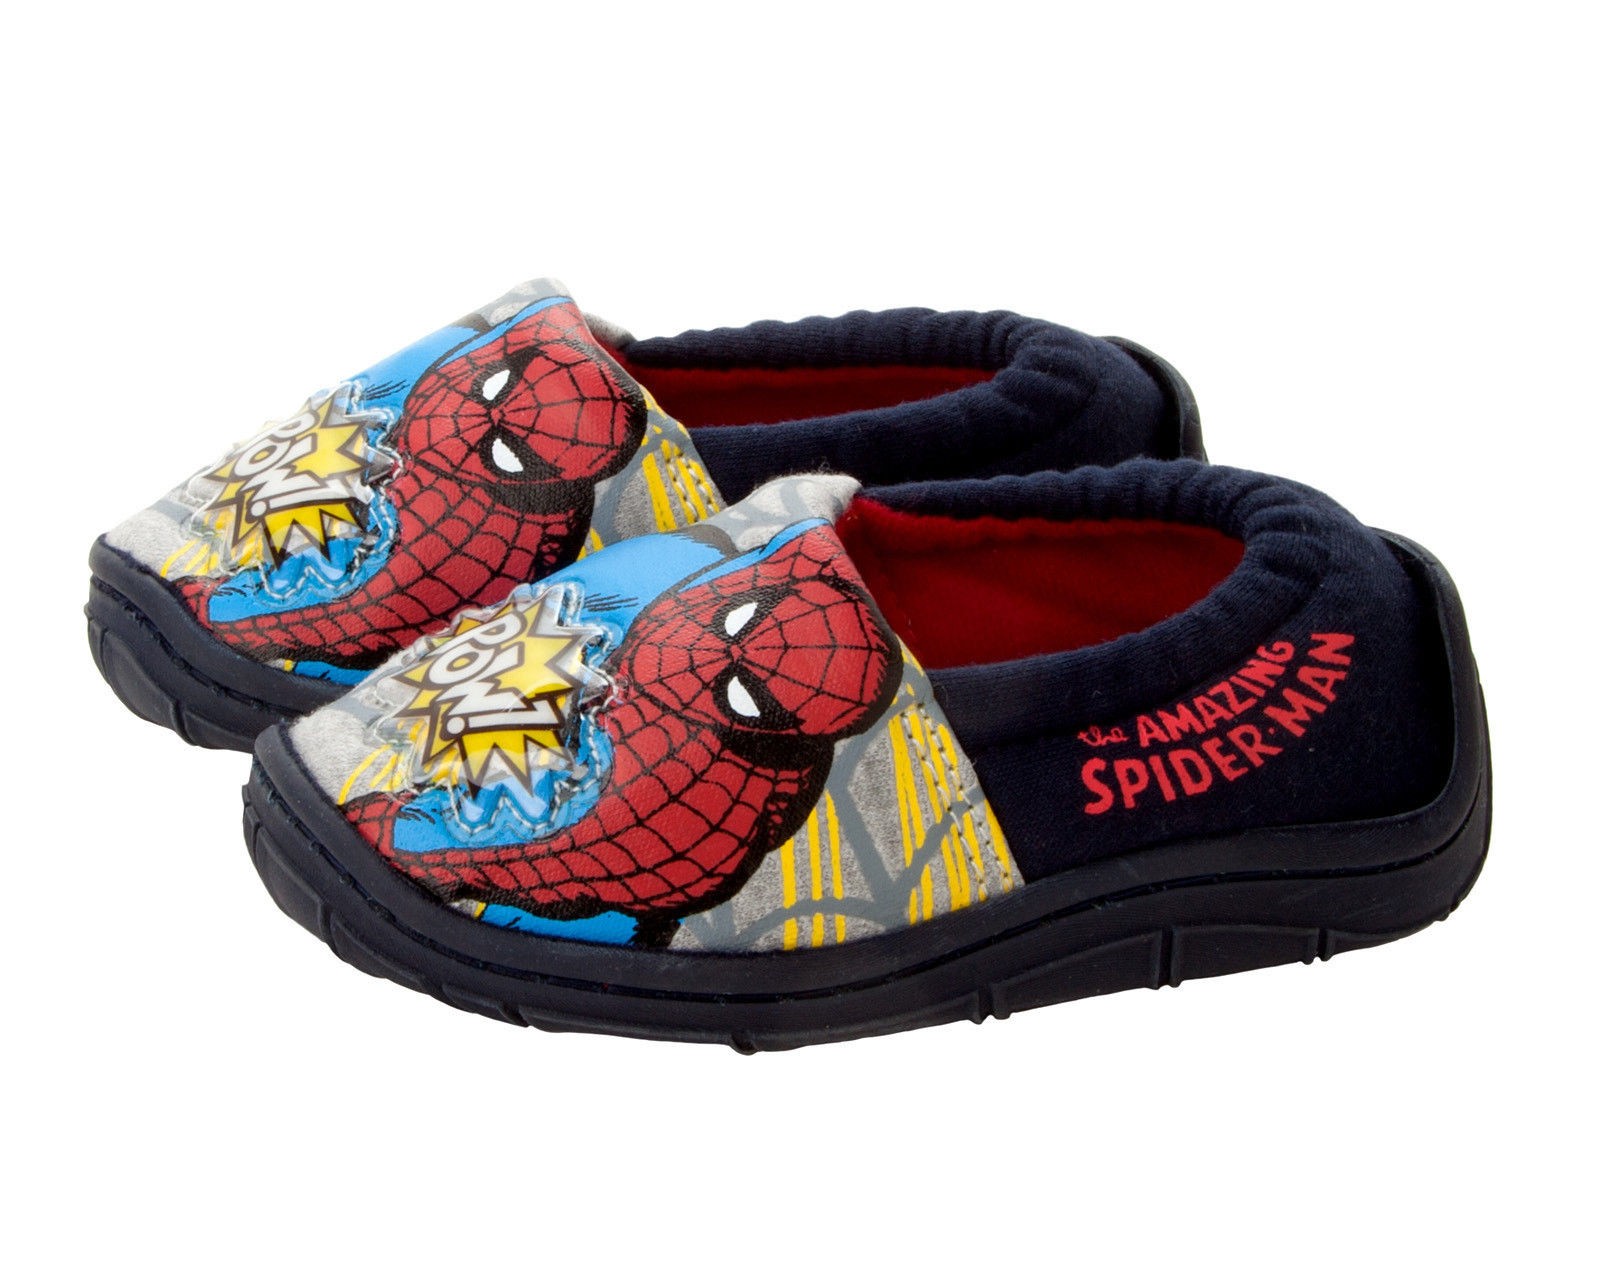 boys marvel slippers